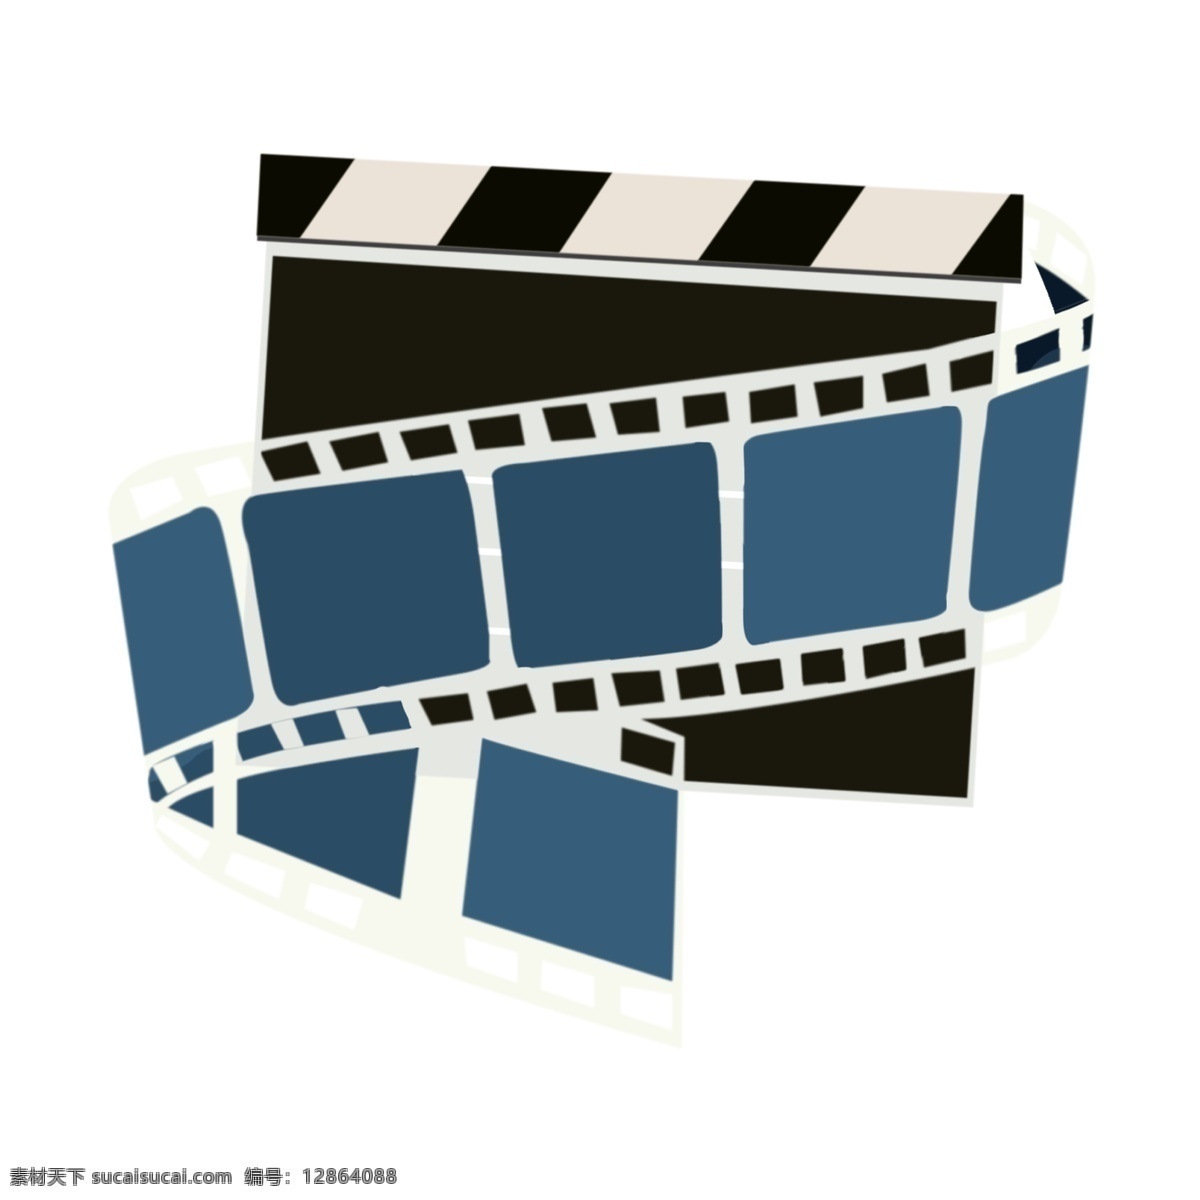 视频 放映 图标 胶卷 插画 拍电影用品 黑色的打板 蓝色的胶卷 卷曲的胶卷 长长的胶卷 视频放映 装饰插画